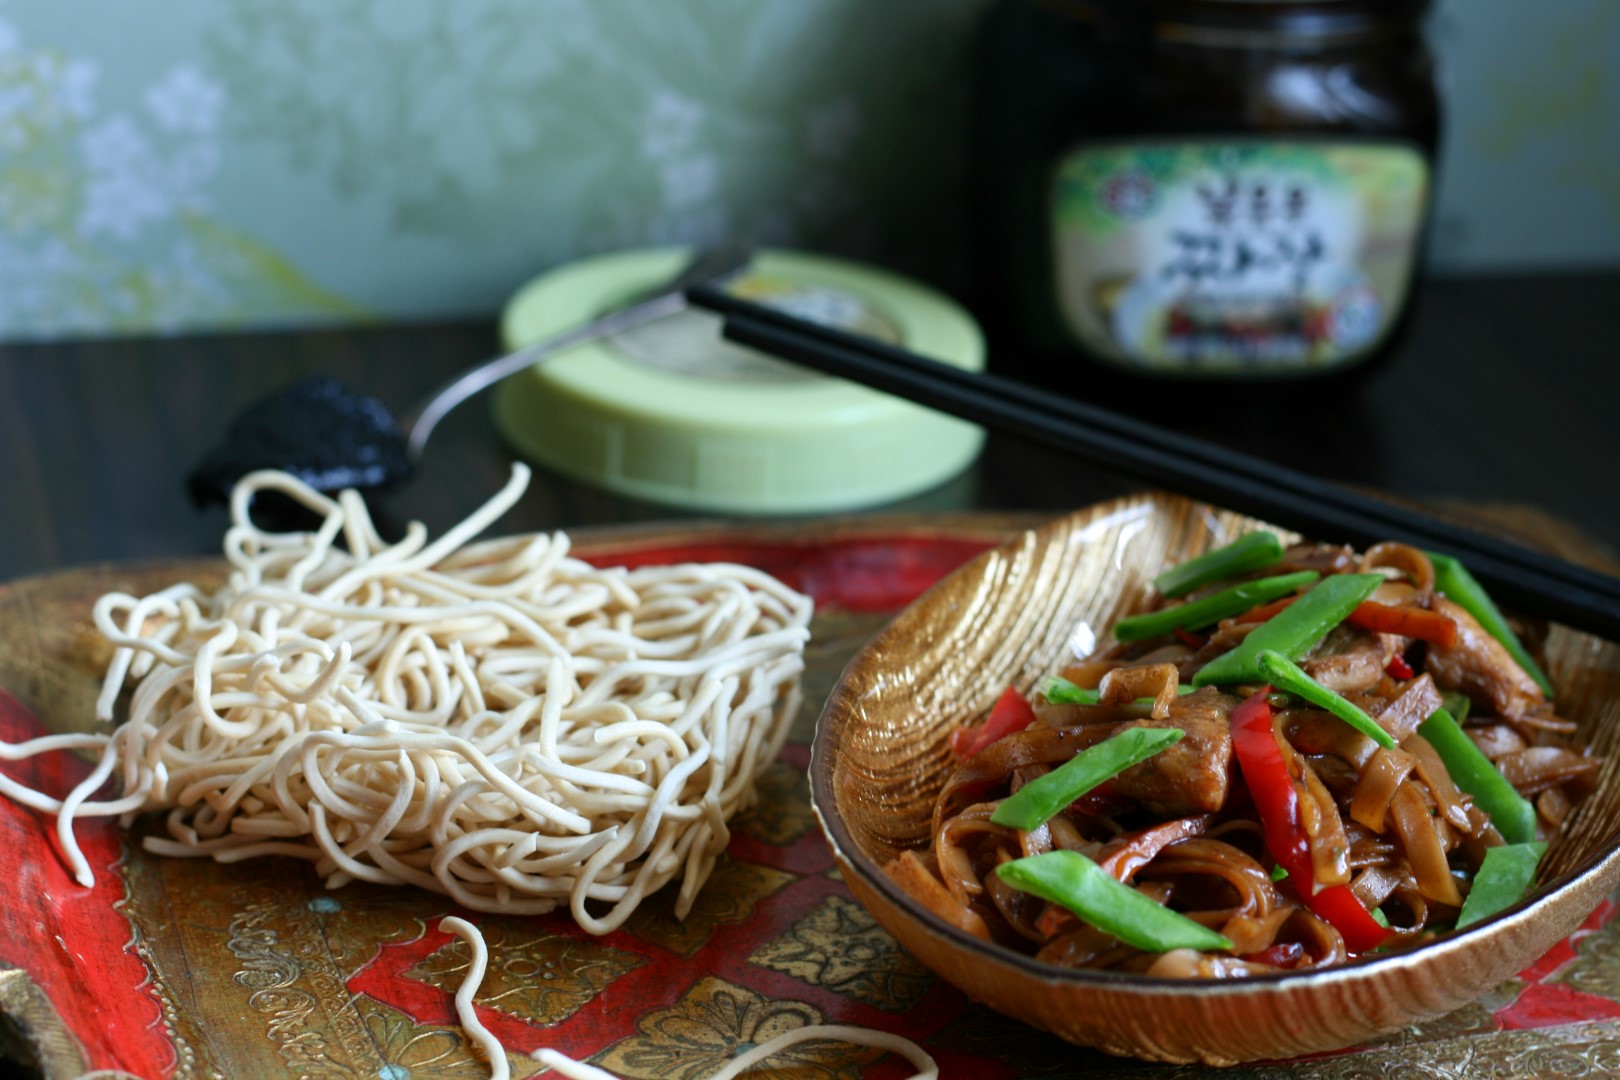 Asia-Nudeln mit Gemüse, Fleisch und leckerer Sauce | Wir leben kochen ...